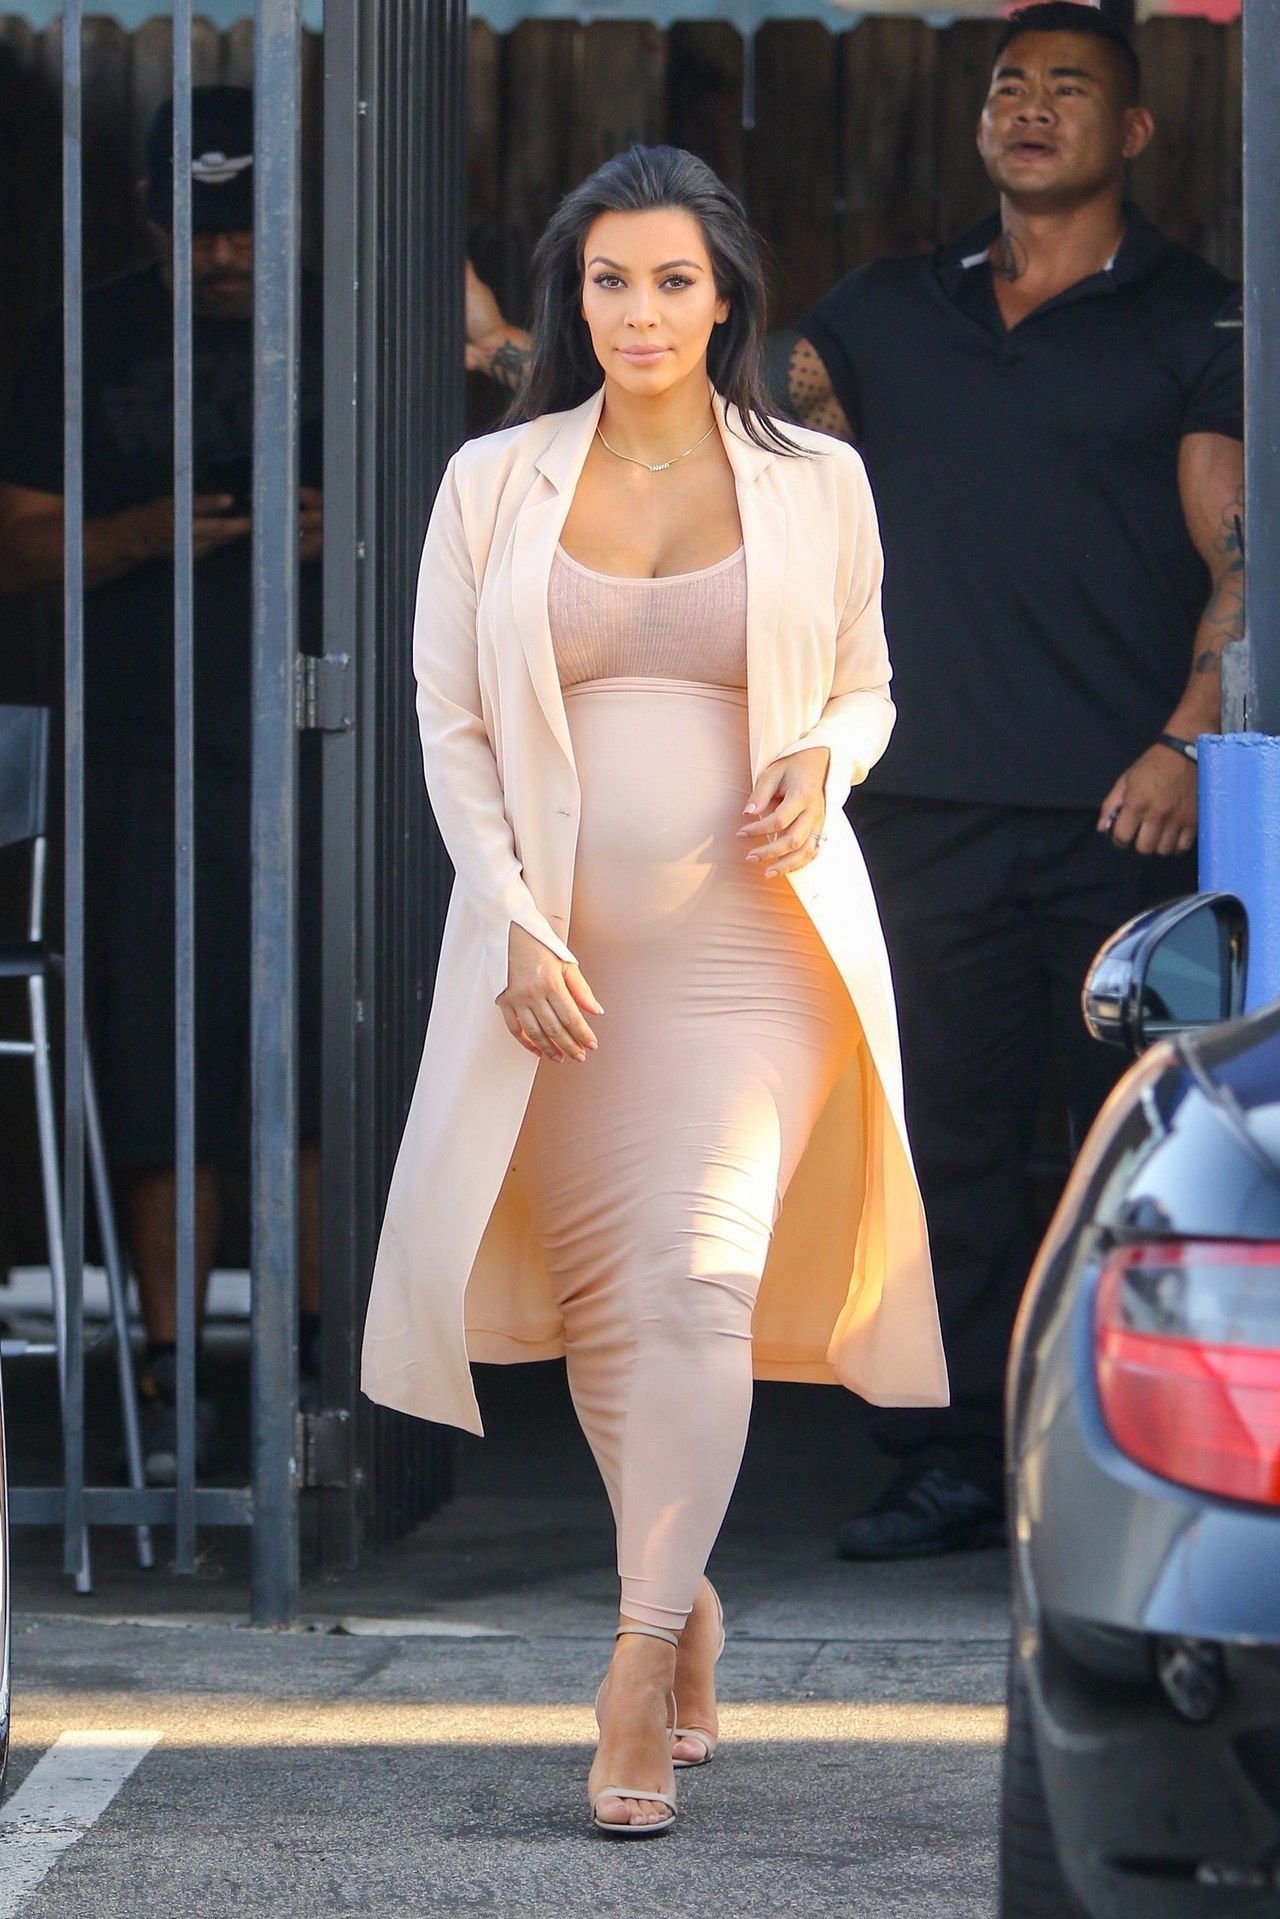 金 kardashian west nude outfit september 2015